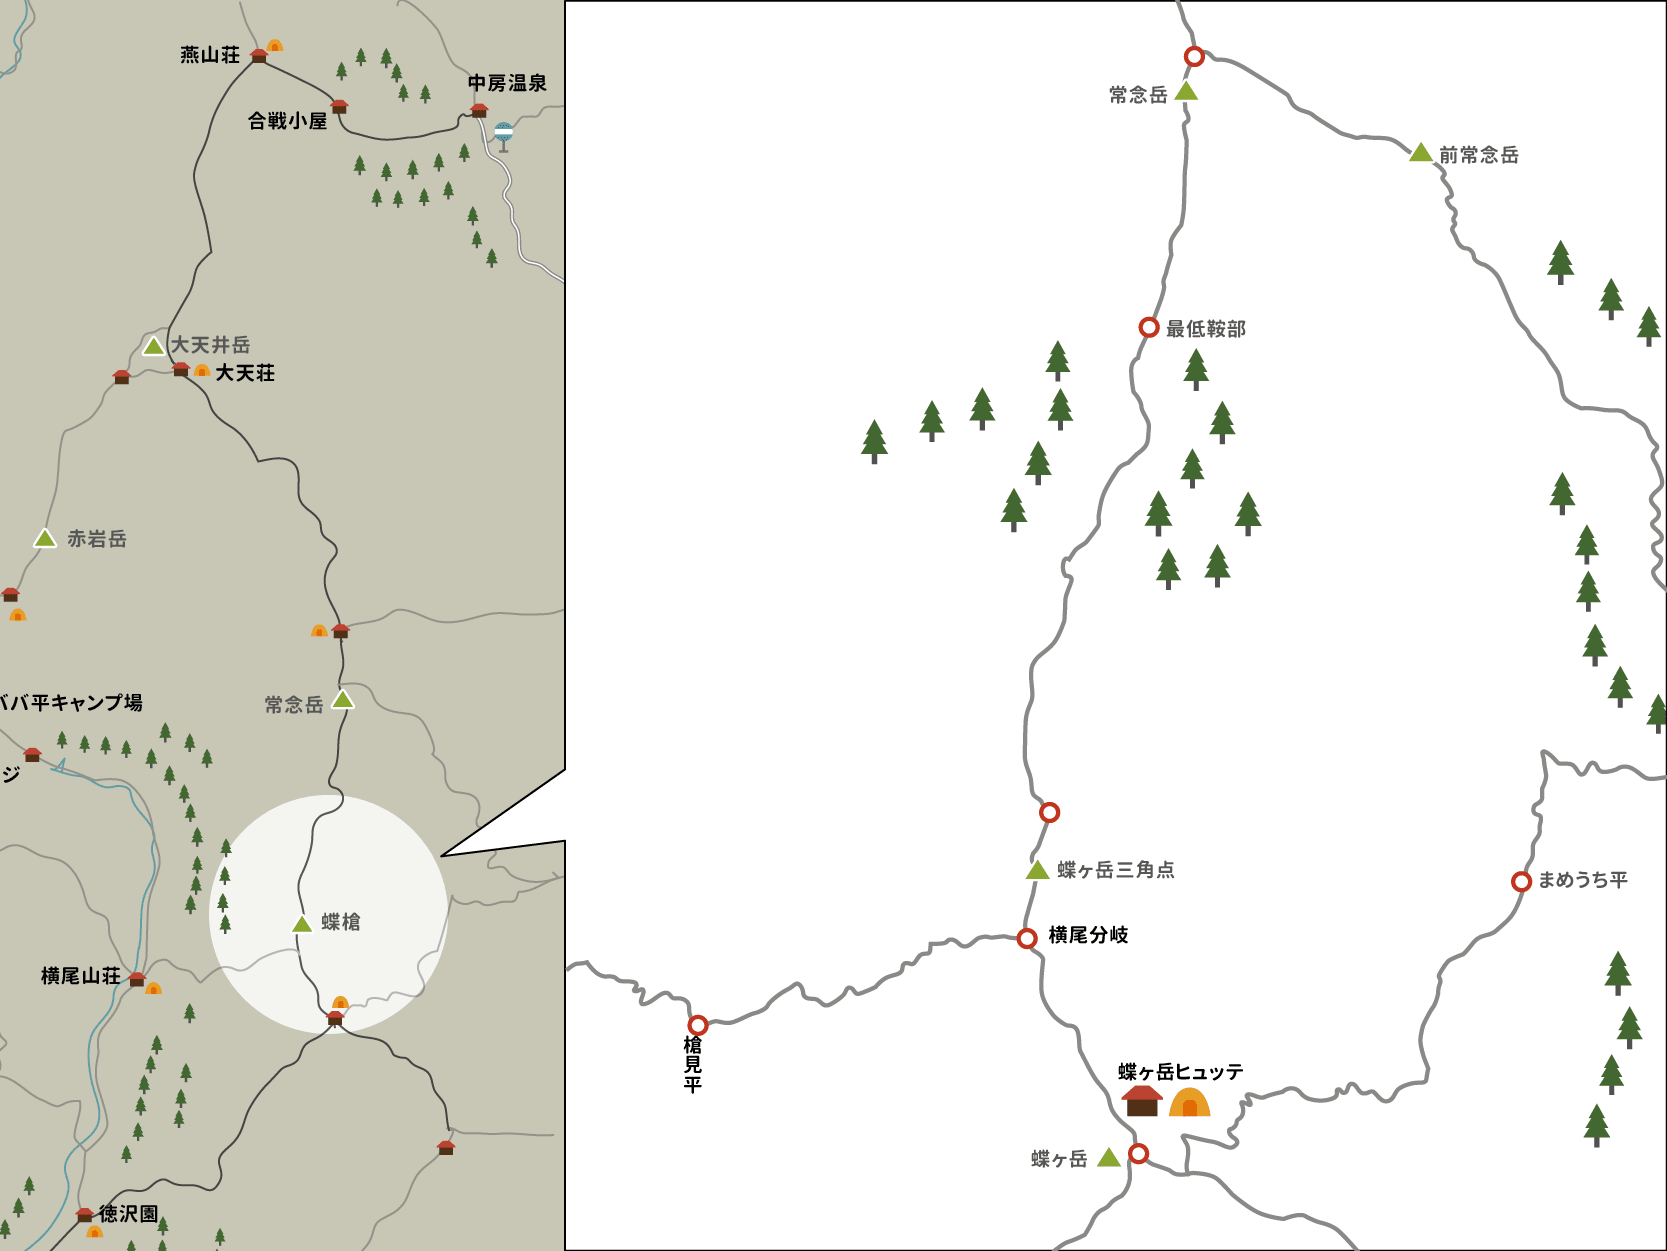 蝶ヶ岳ヒュッテから横尾分岐点までのイラストマップ